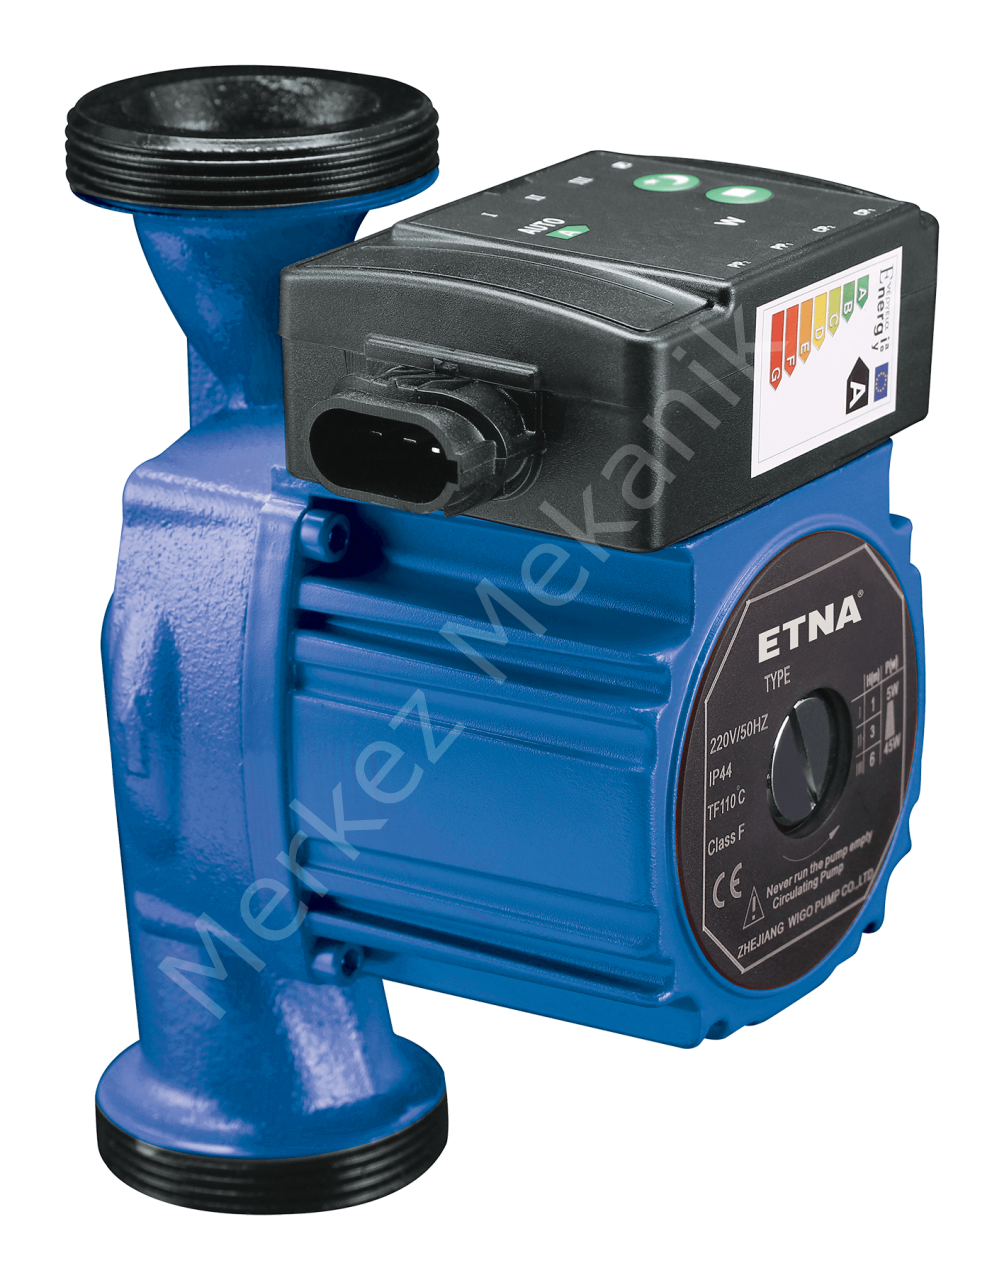 ETNA ECP 25-10-180 Frekans Kontrollü Sirkülasyon Pompası